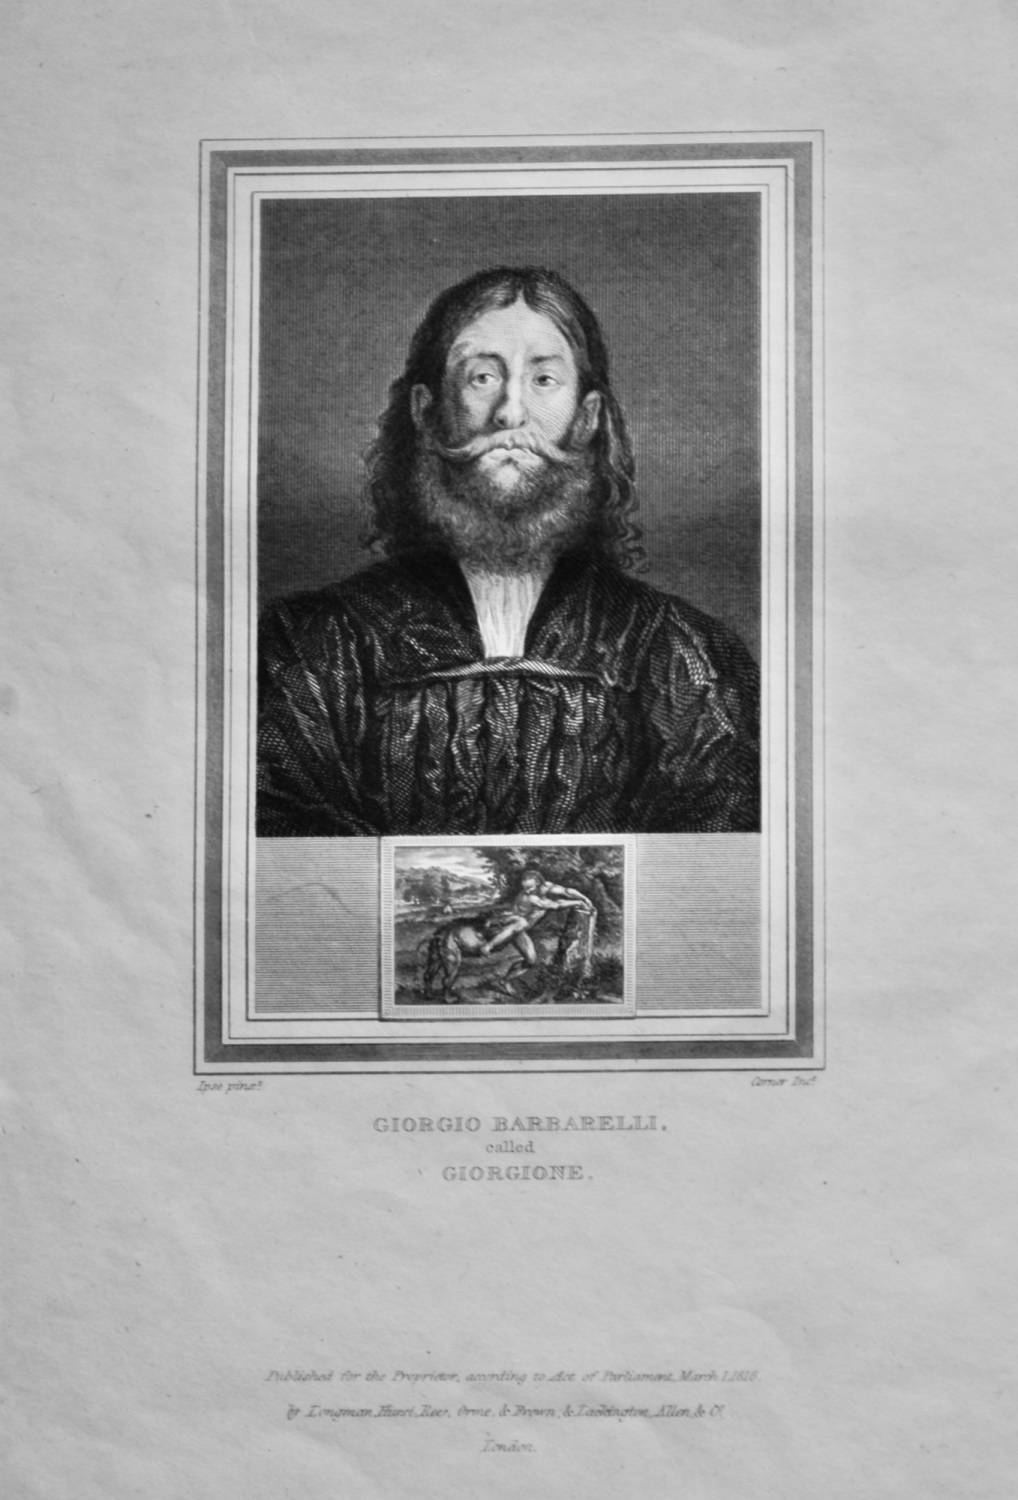 Giorgio Barbarelli.  called Giorgione.  1825.